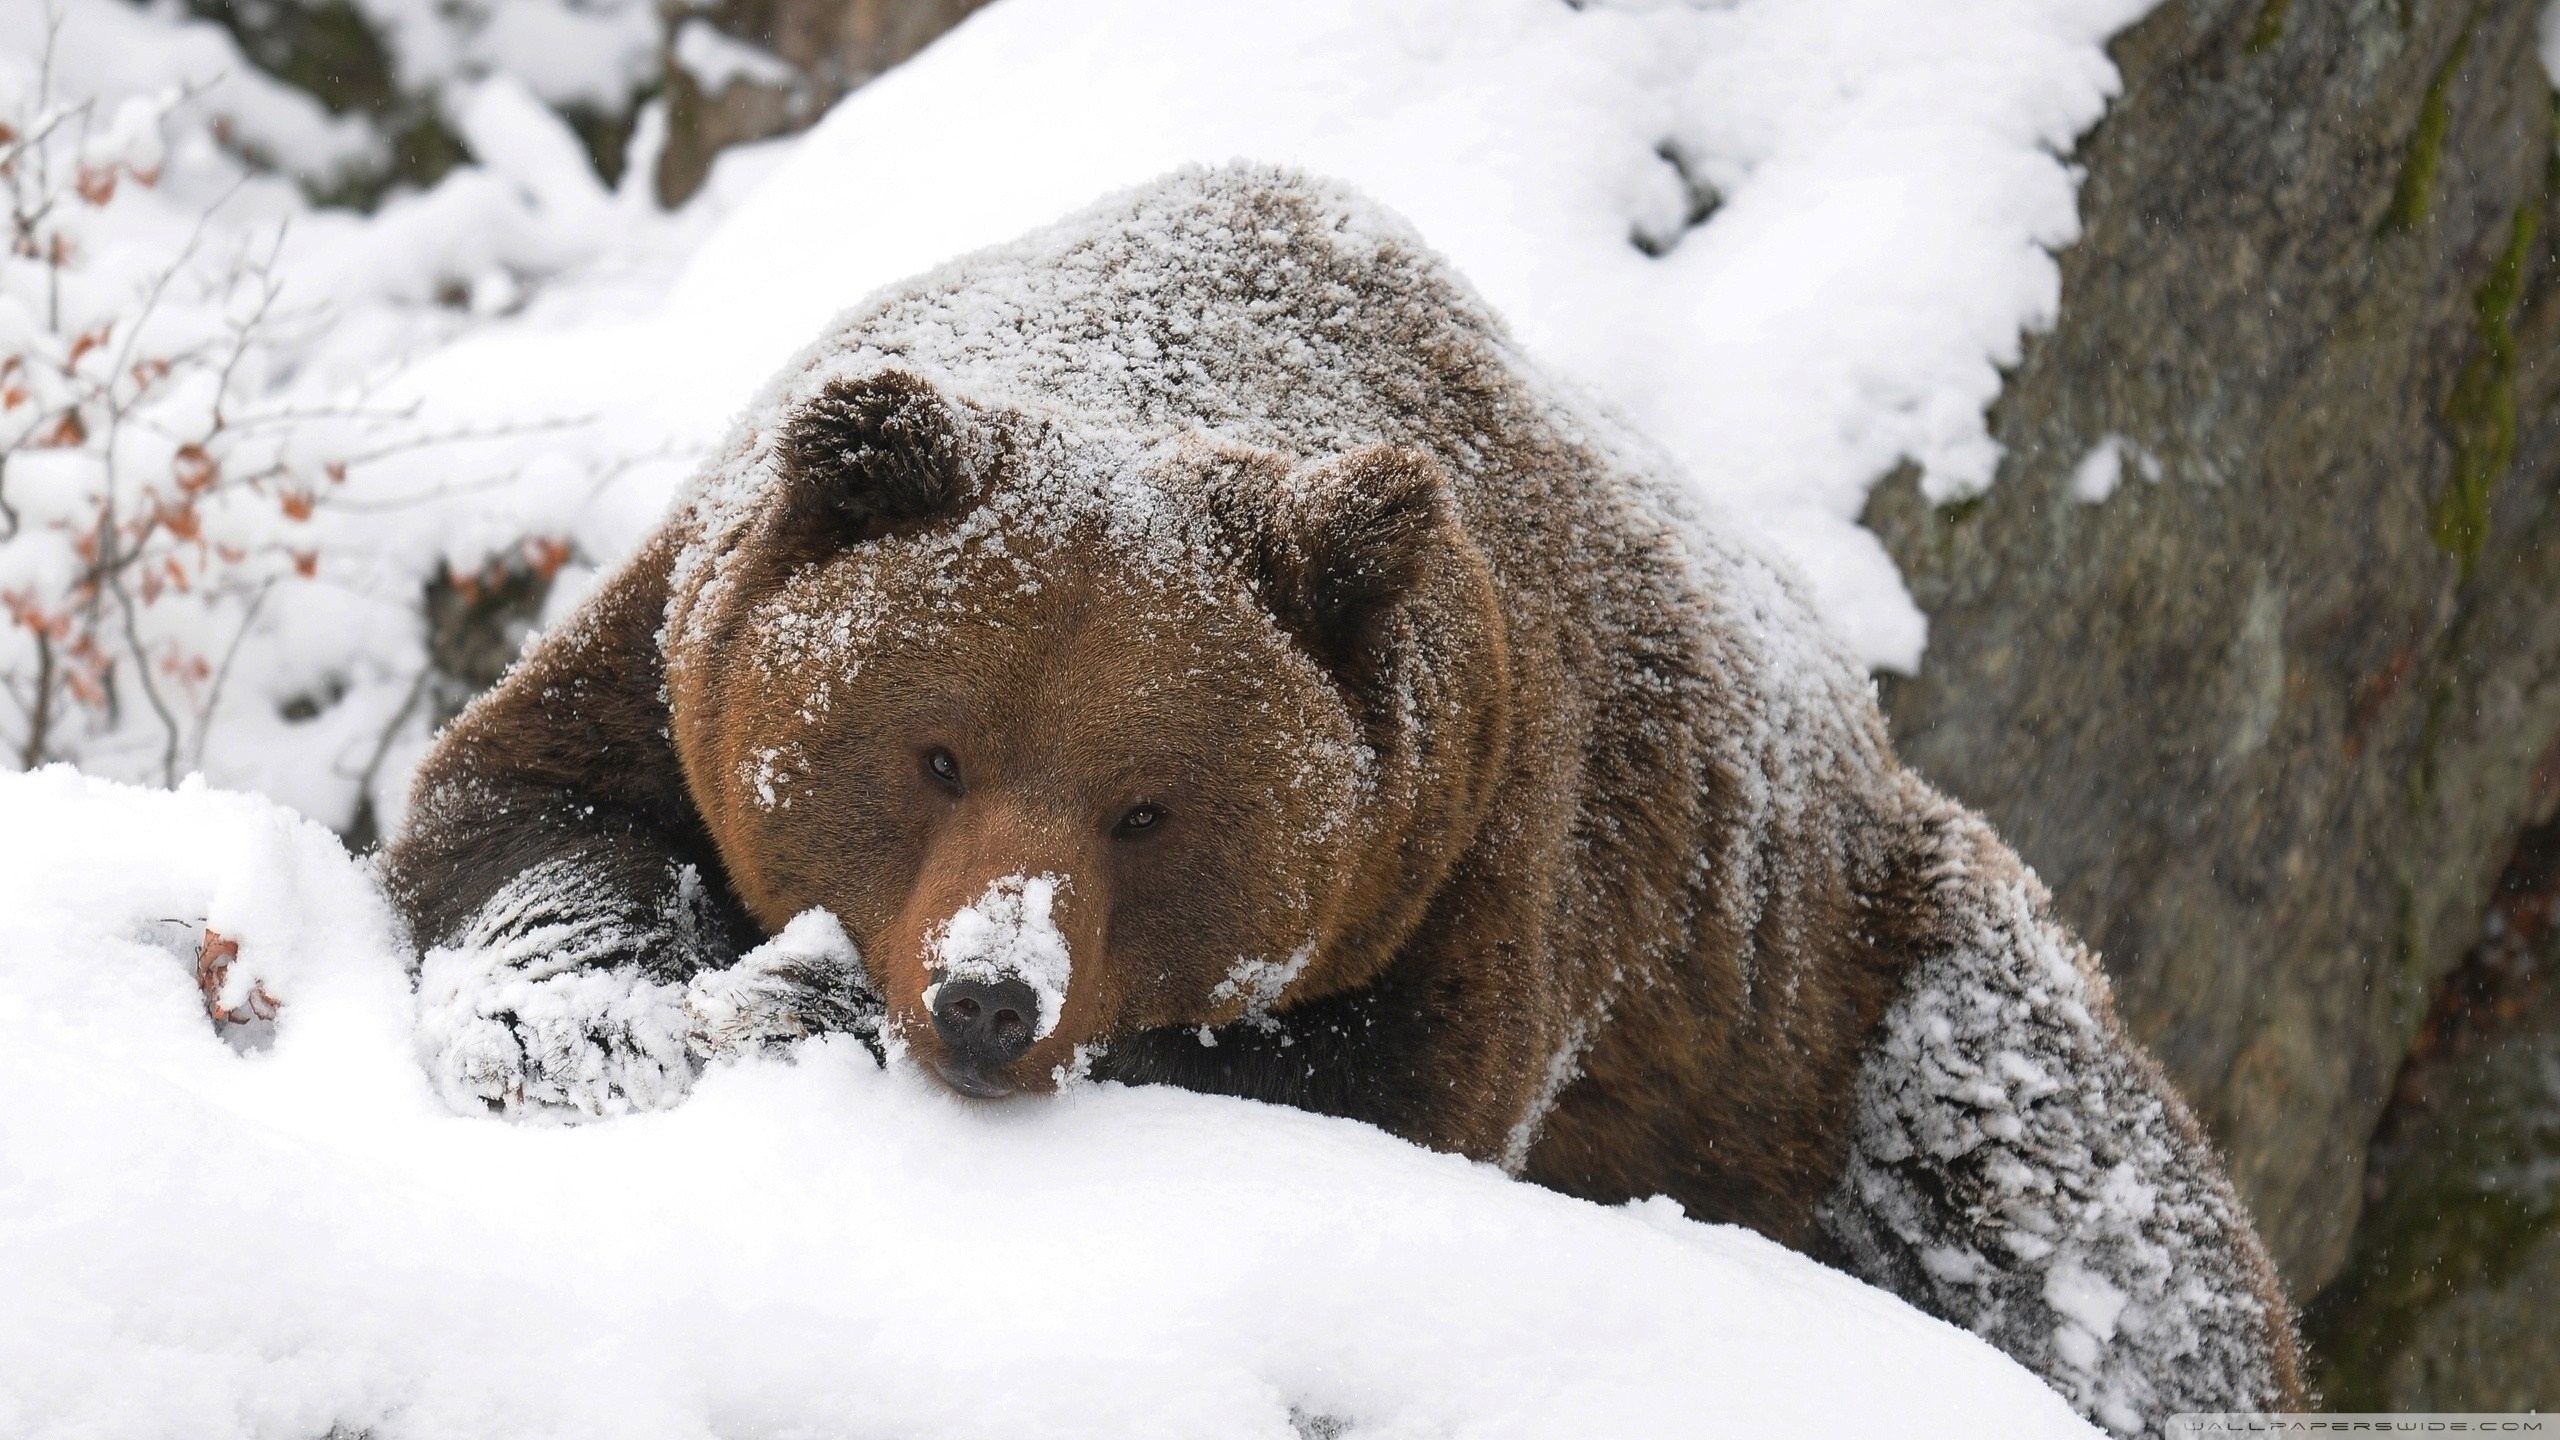 Зверь пробуждение. Бурый медведь зимой в берлоге. Медведь Гризли в берлоге. Медведь Гризли спячка. Бурый медведь в спячке.